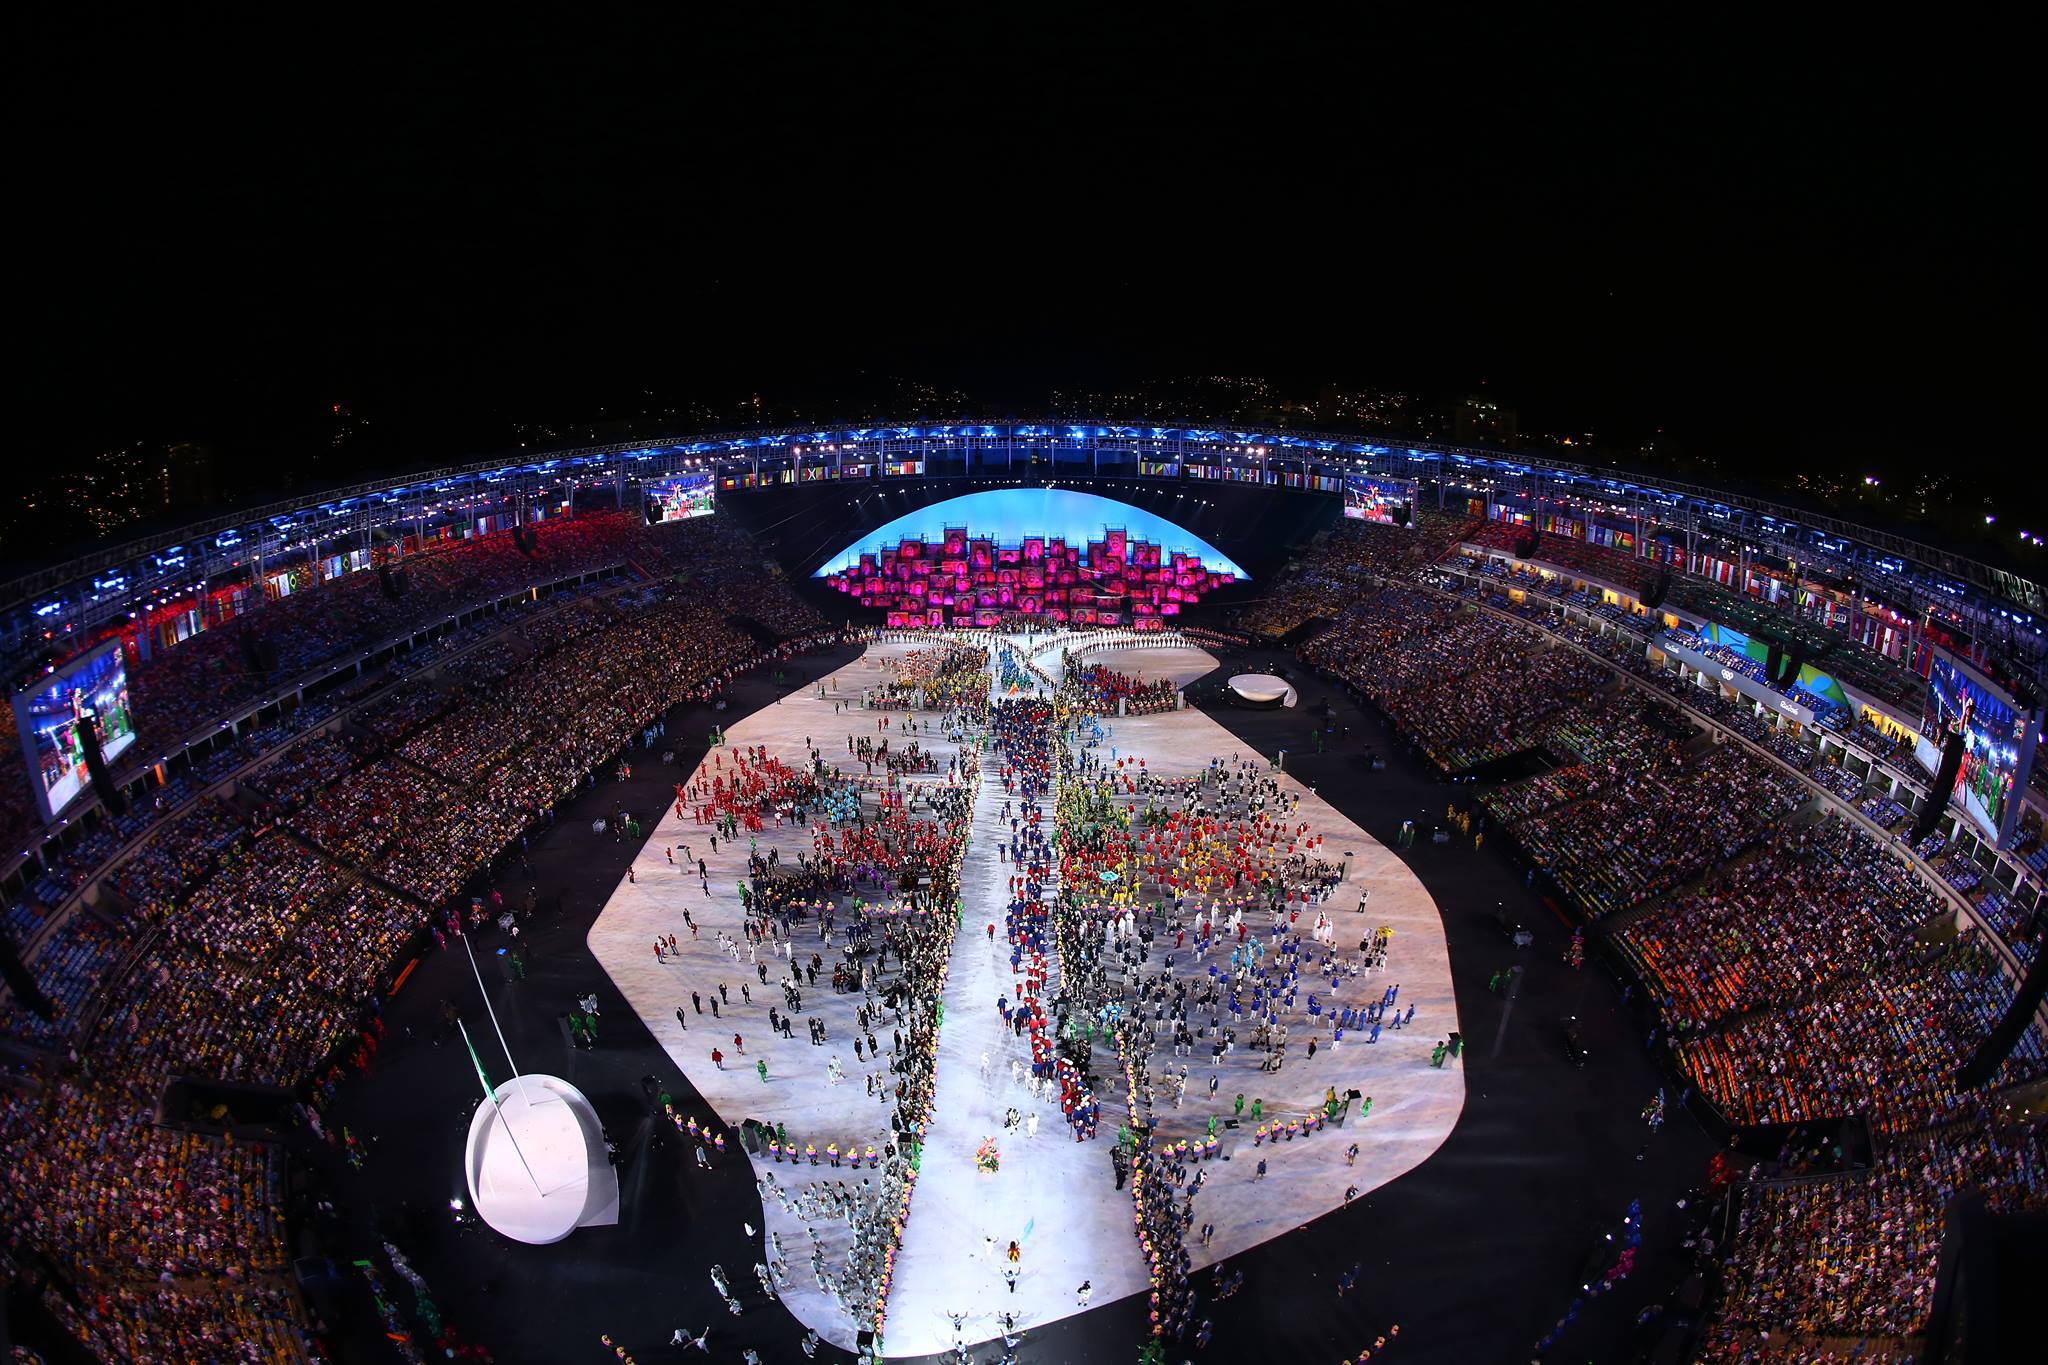 #Rio2016 opening ceremony photos